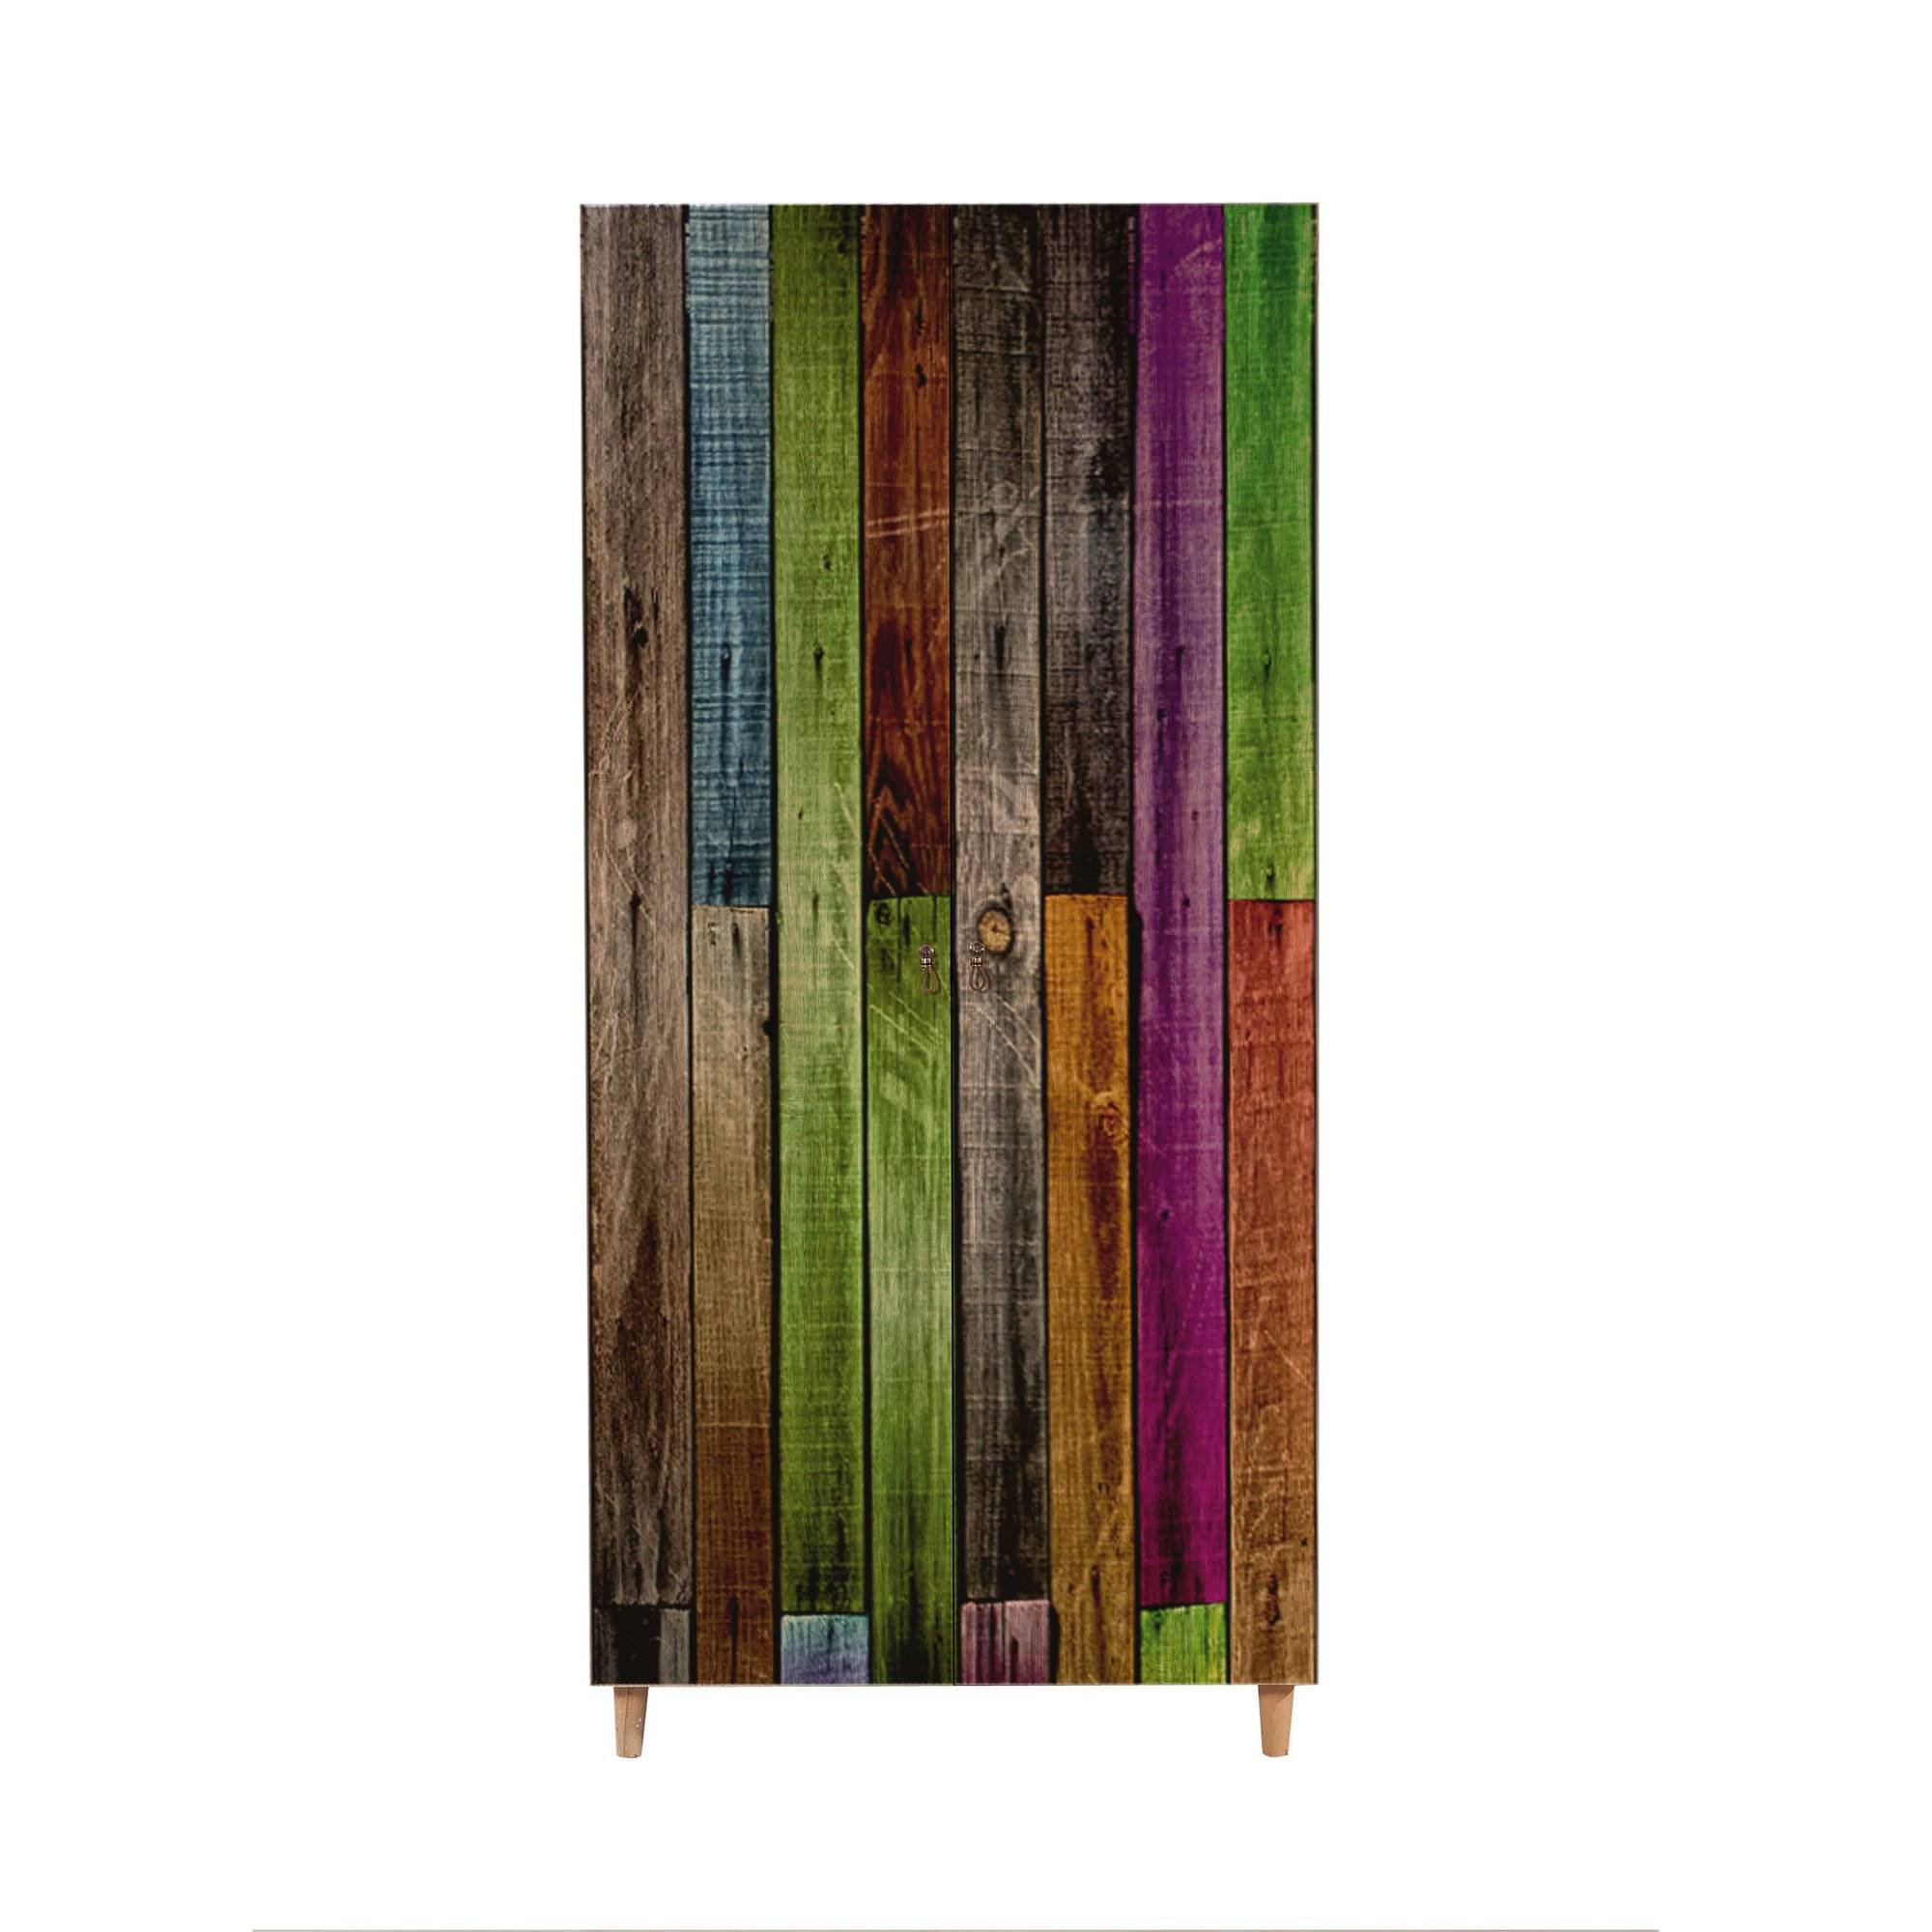 Armadio Infigo a 2 ante 90 cm in legno naturale con motivo a listoni multicolore